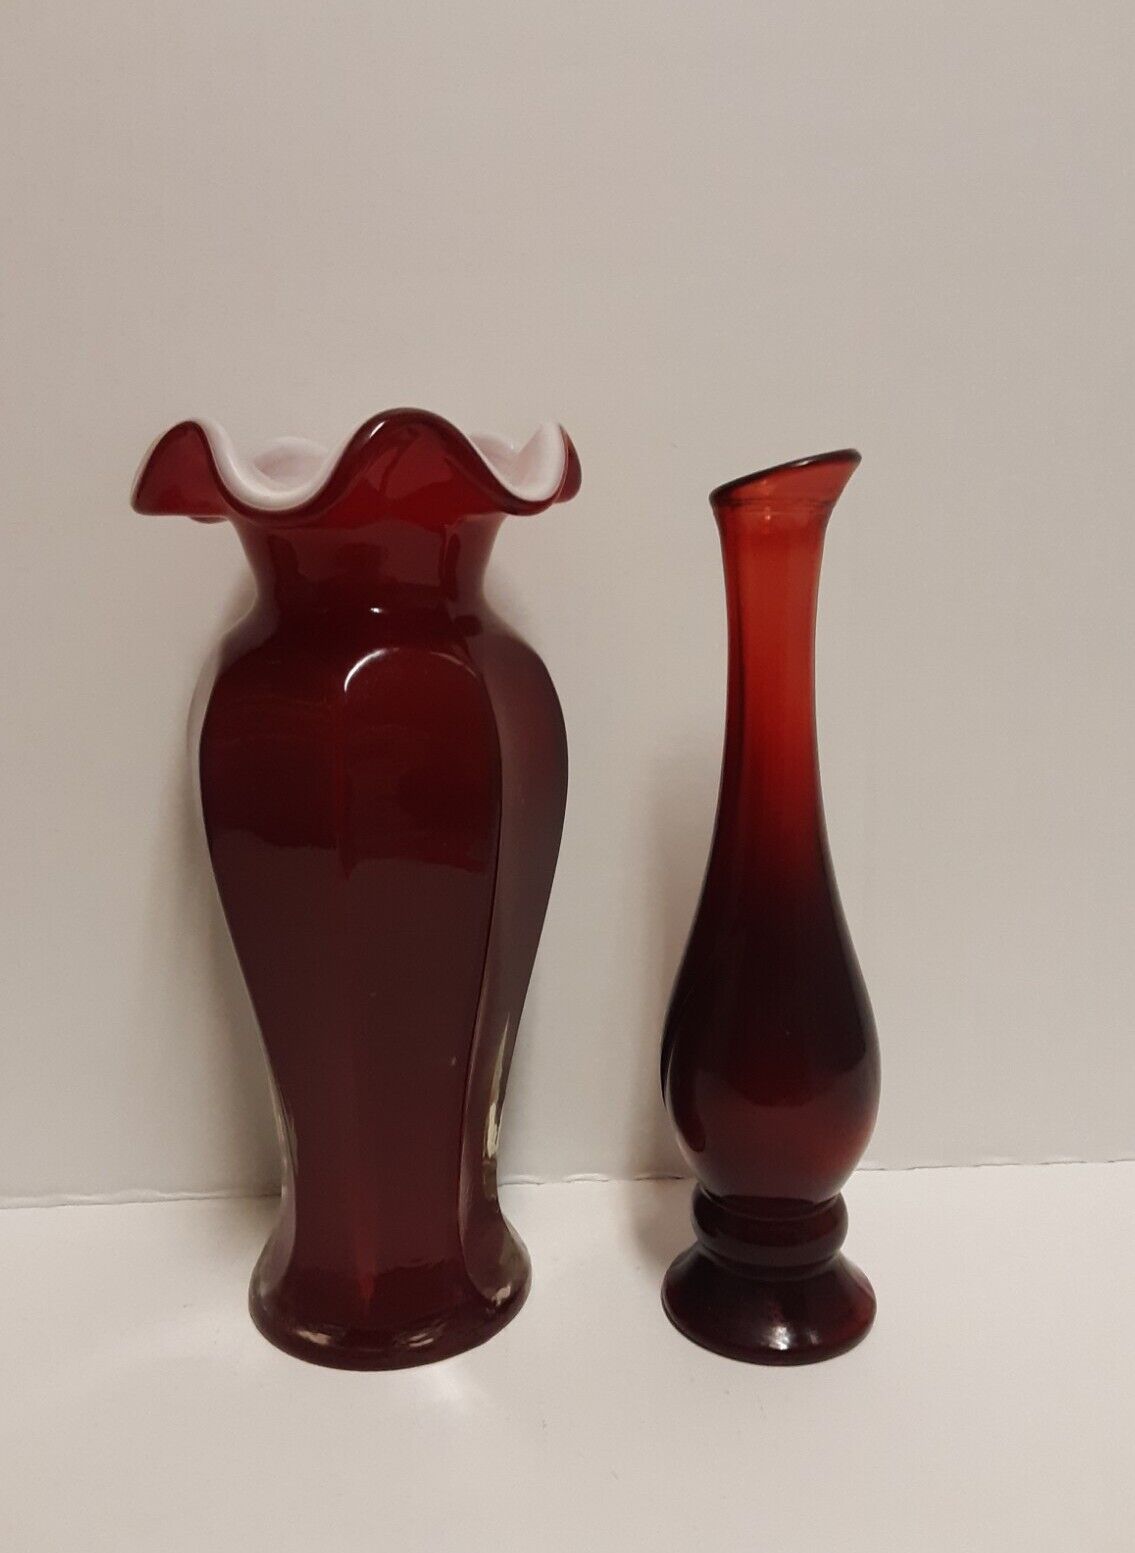 Red Ruby Vases, Avon, Bud Vase,